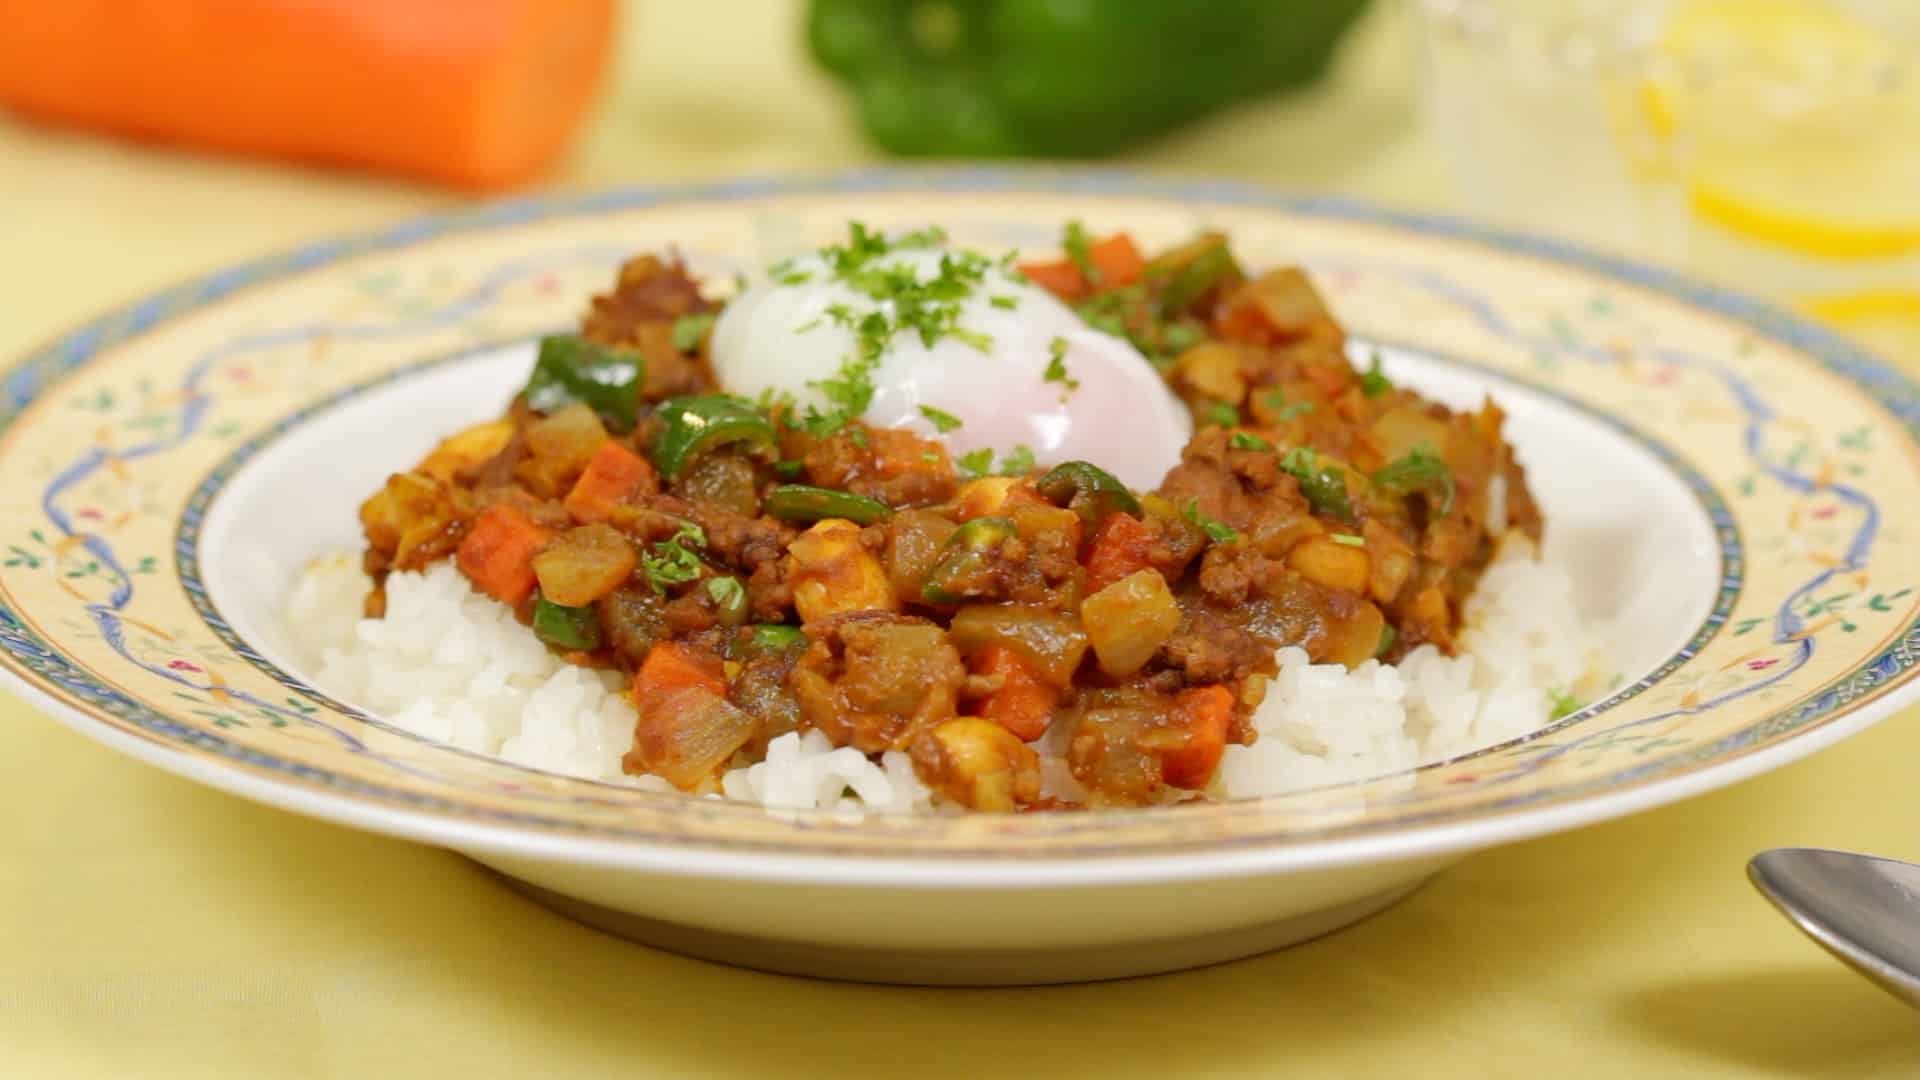 Recette de curry sec aux haricots avec de la viande hachée et des légumes (curry  japonais sans sauce) - Cooking with Dog